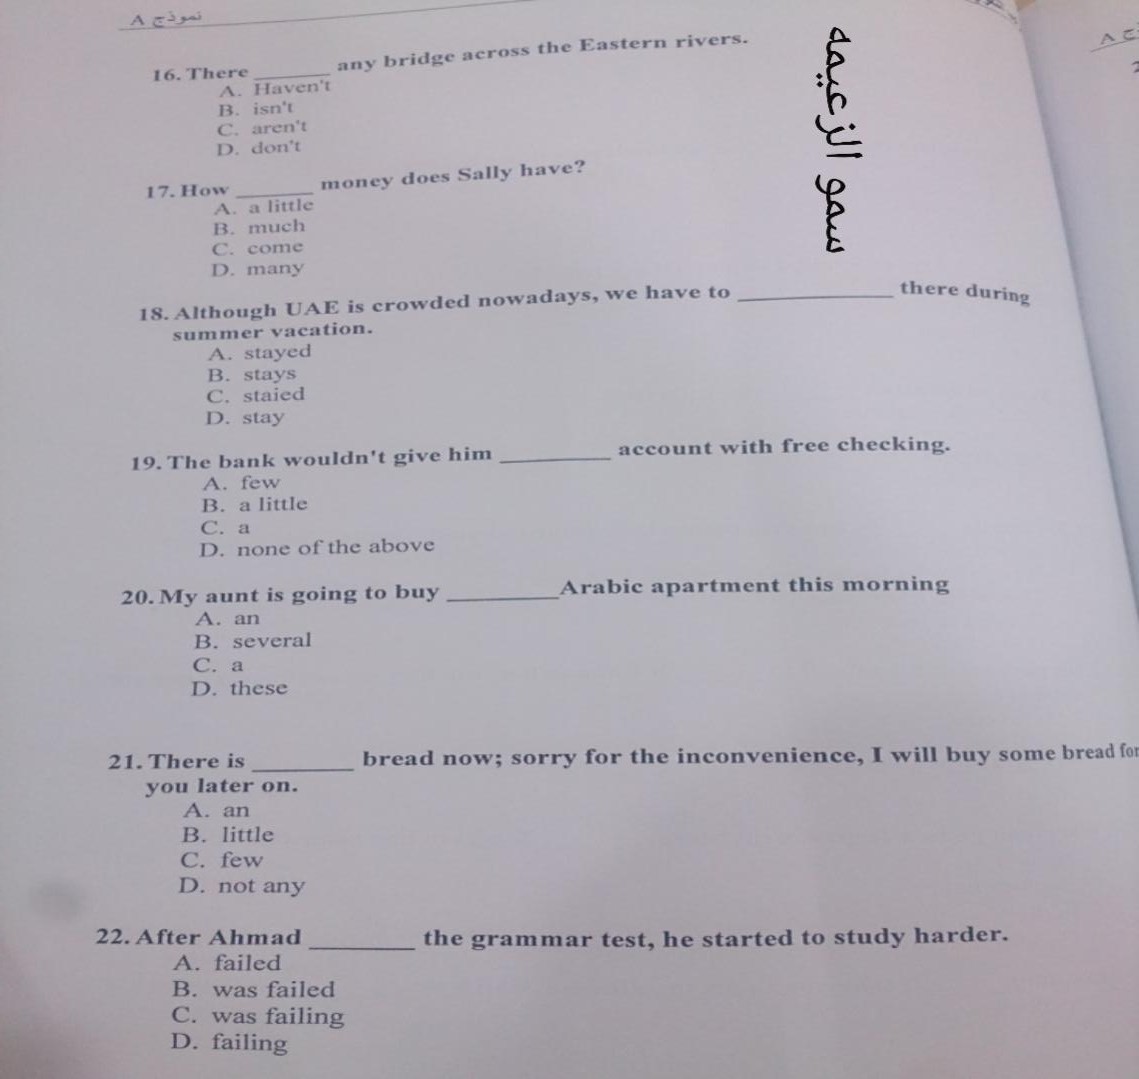 اسئلة اختبار مادة التركيب اللغوي الفصل الدراسي الأول 1435هـ نموذج (a)